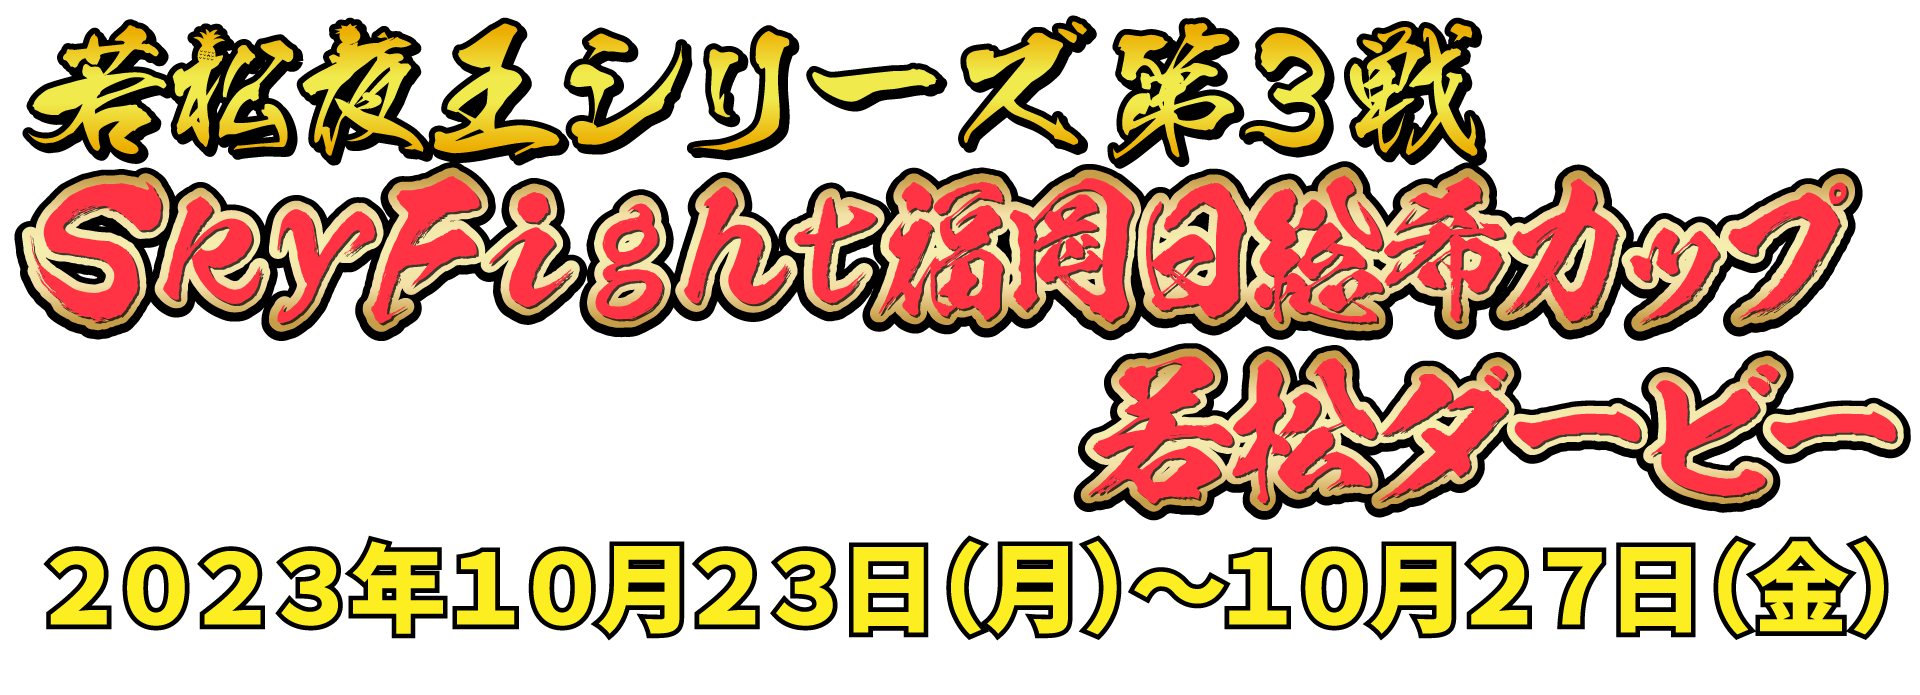 若松夜王シリーズ第3戦   2021年11月30日(火)〜12月4日(土)